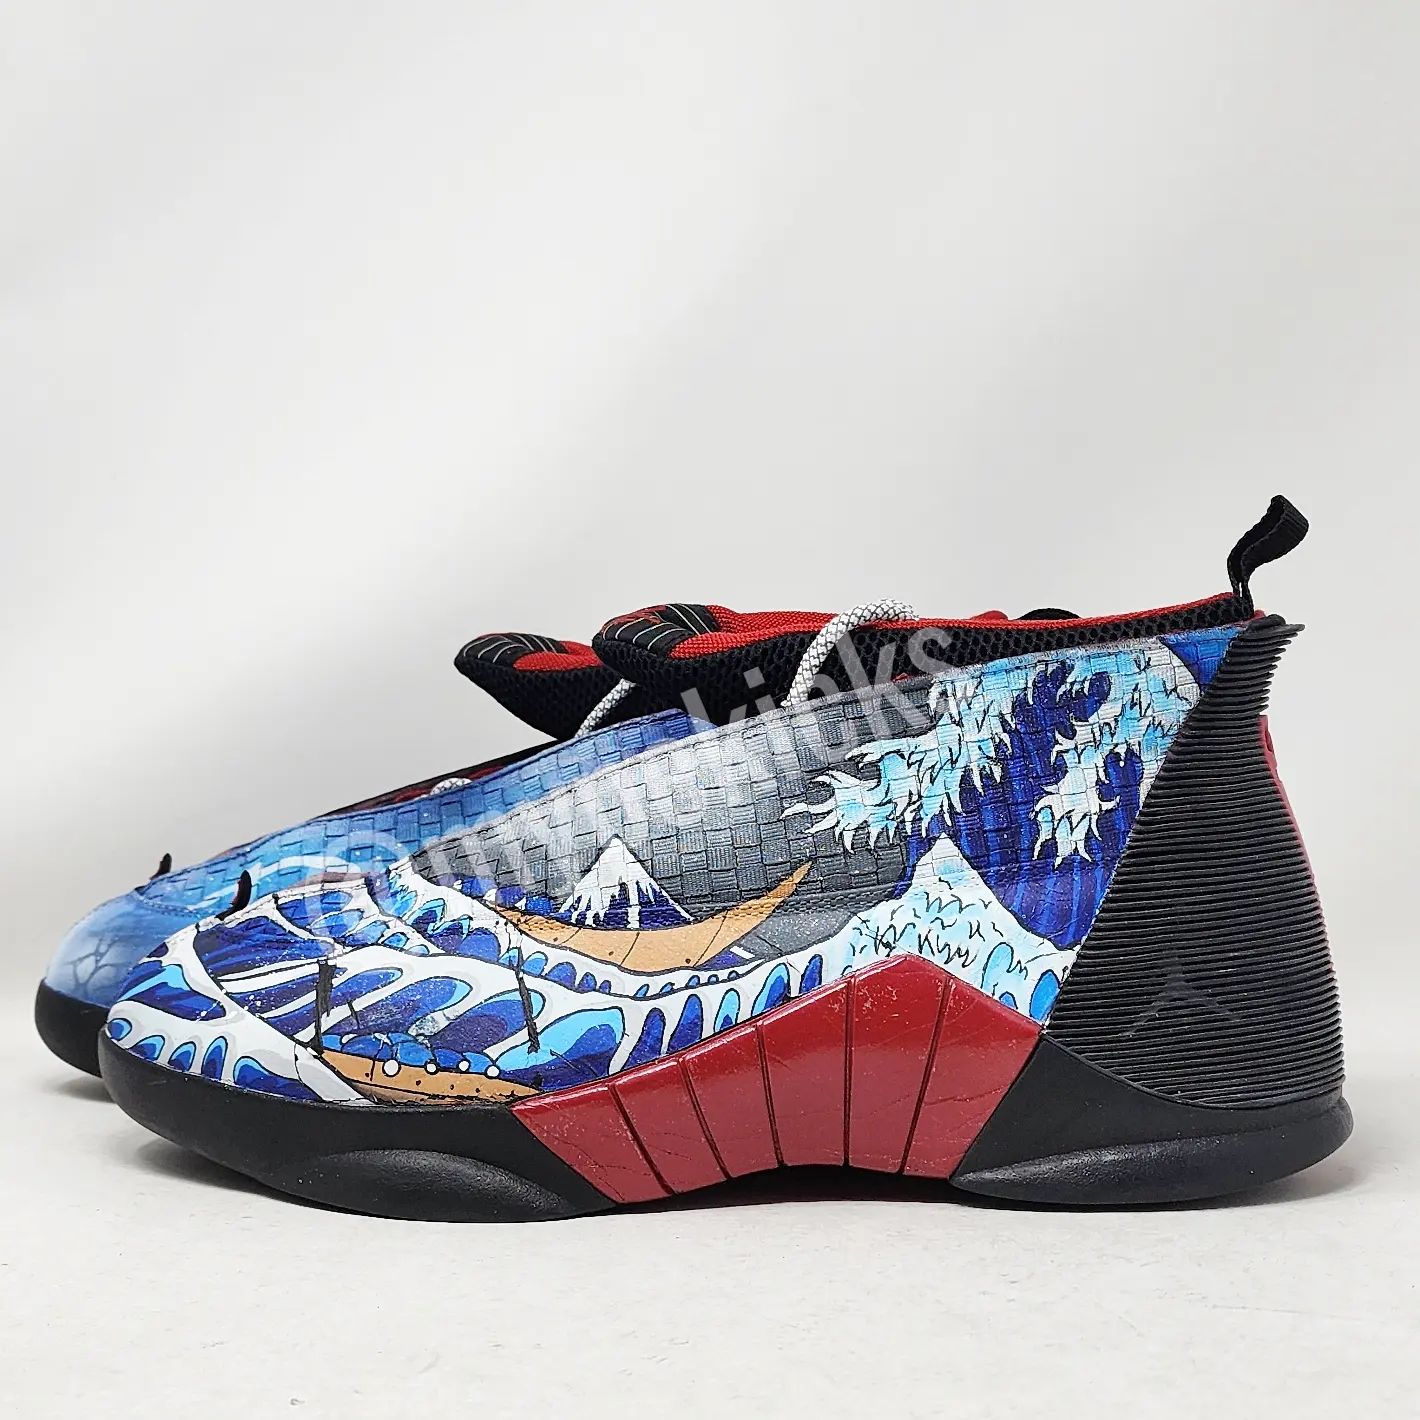 Jordan 15 Kelly Oubre Jr. Wizards Custom Sneakers